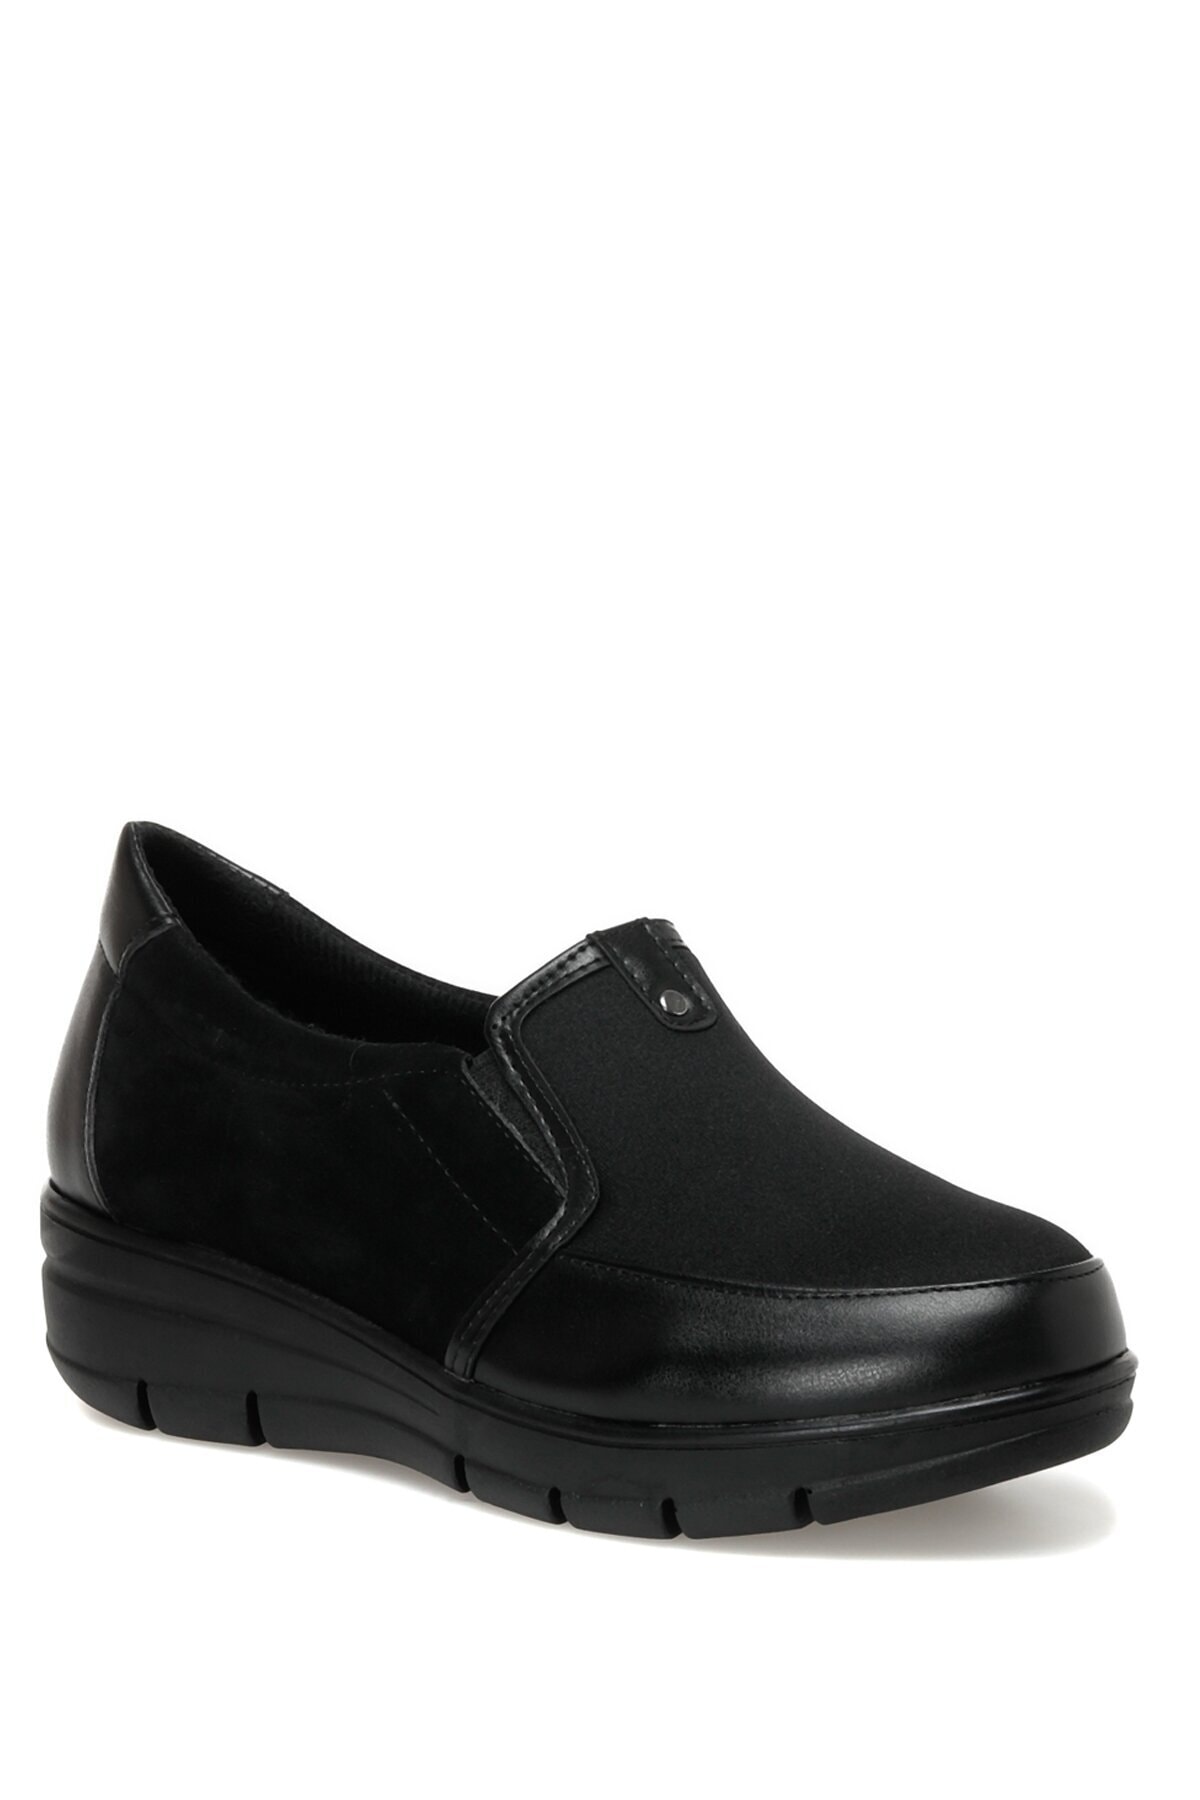 Polaris 162865.z2pr Siyah Kadın Comfort Ayakkabı